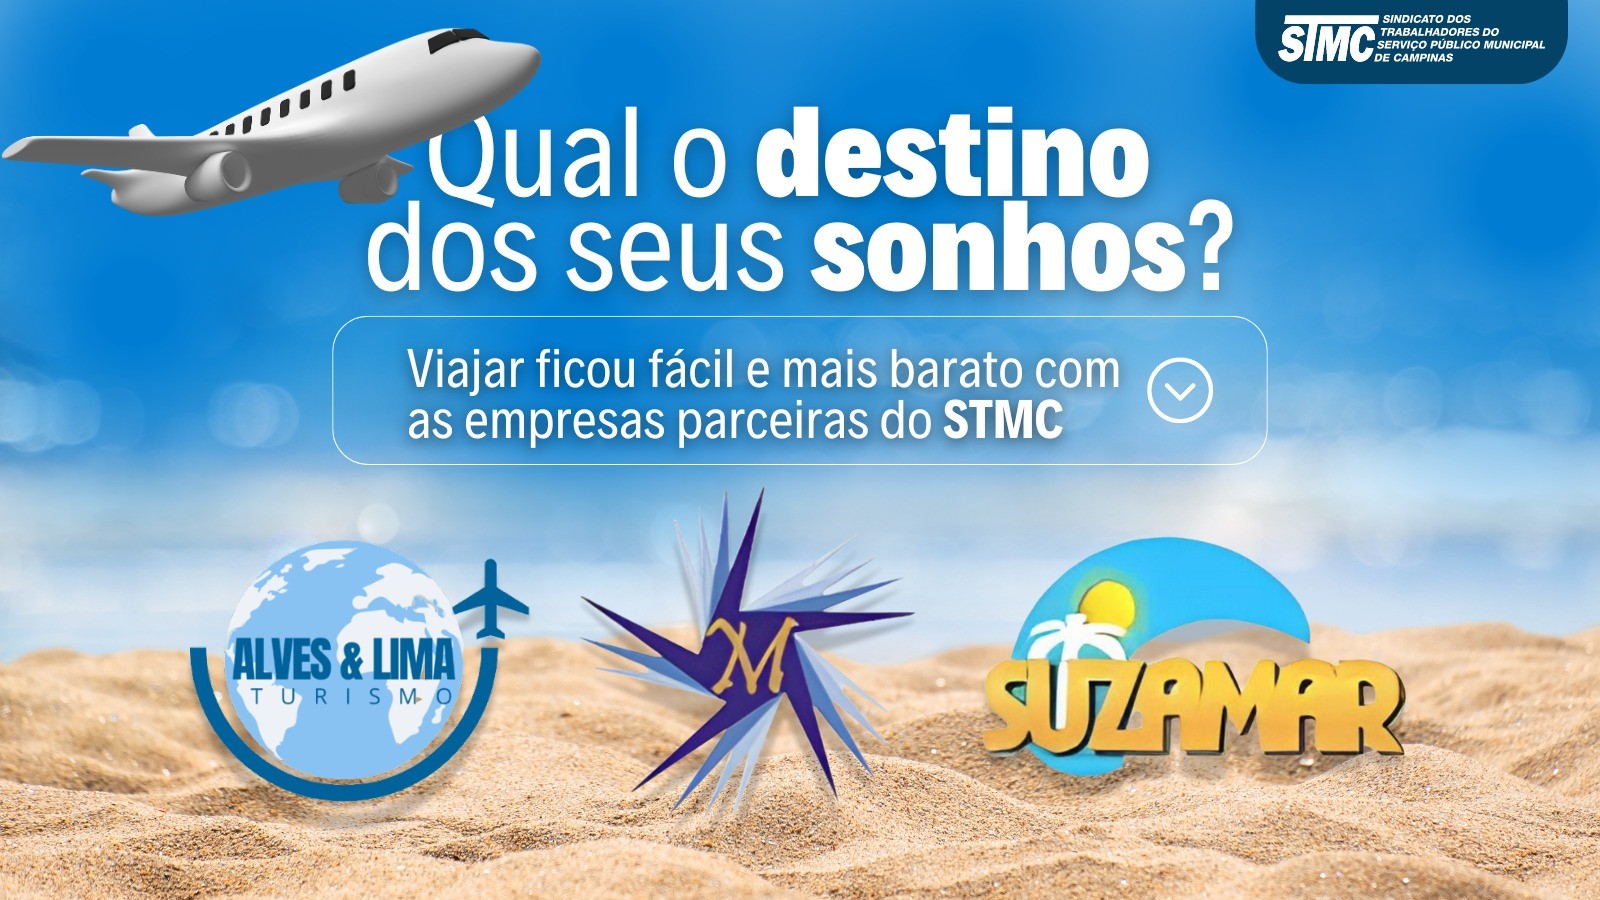 Viajar ficou fácil e mais barato com as empresas parceiras do STMC.